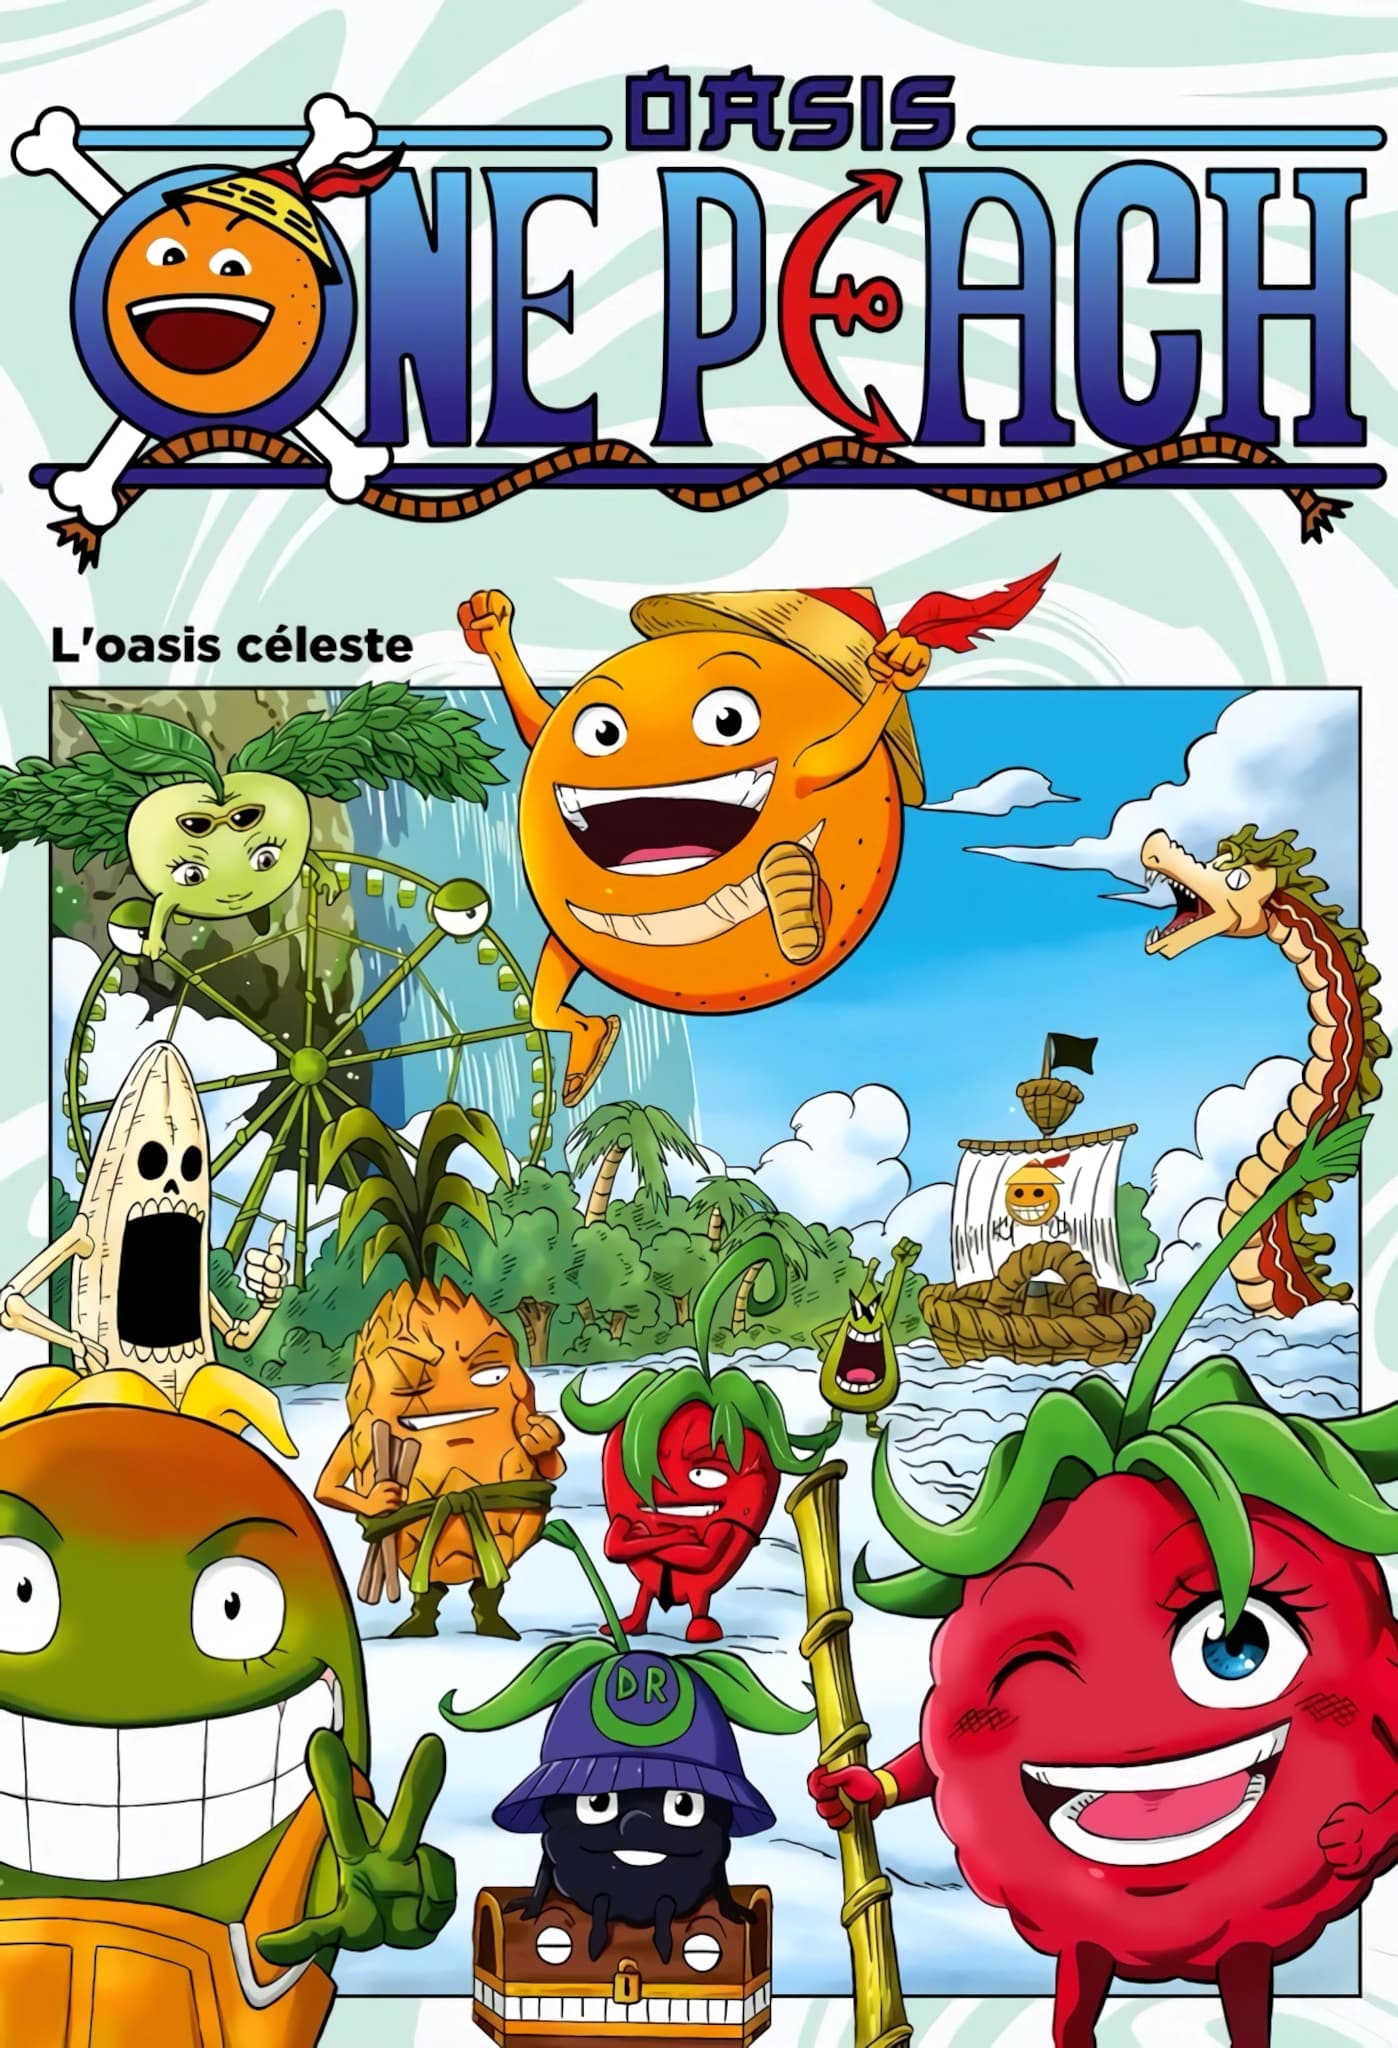 Présentation du manga fruité "One Peach" par Oasis et Vivi-Zama